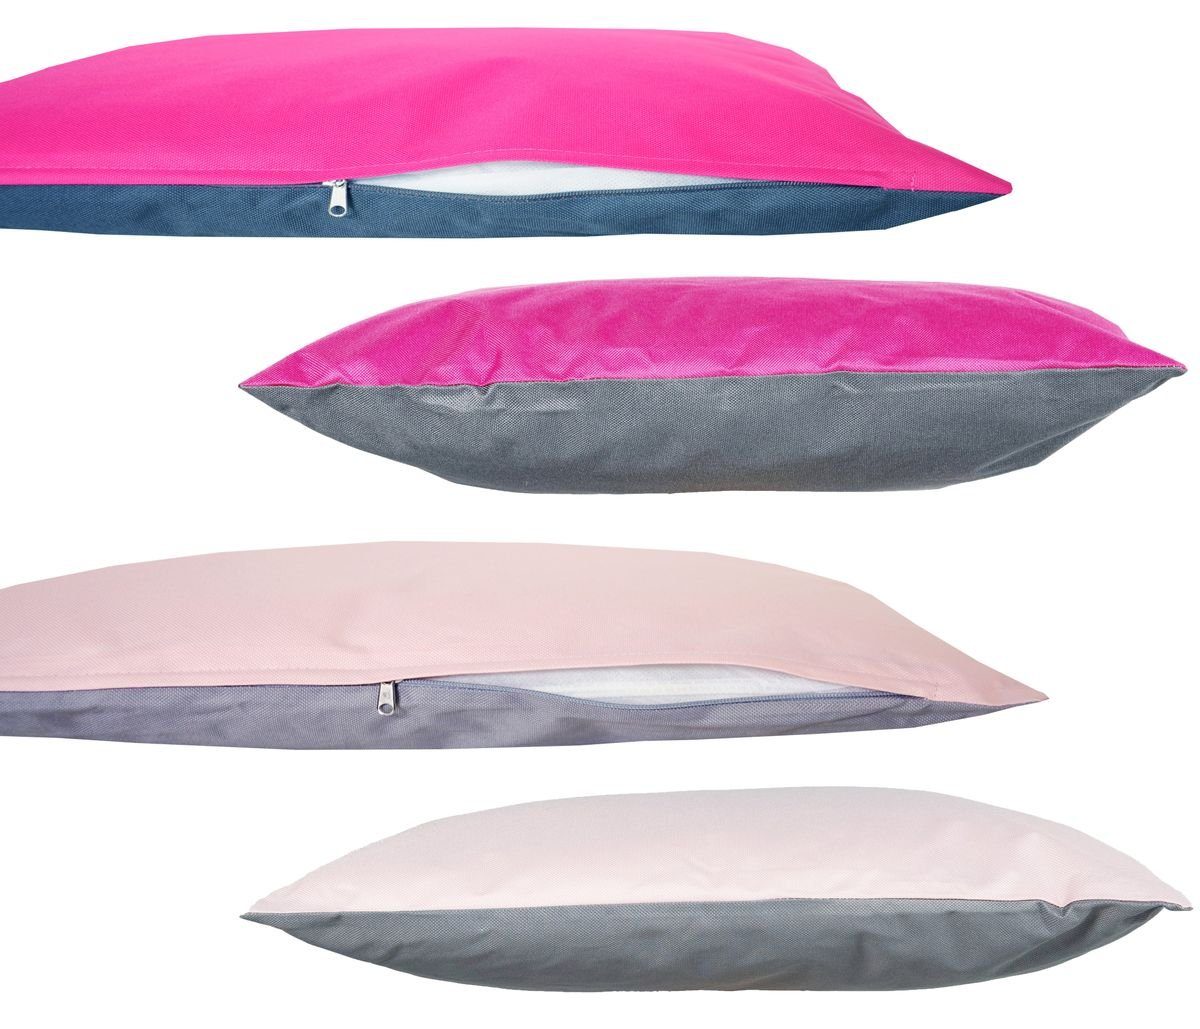 Kissen inkl. Außen / Grau-Rosa Dekokissen Outdoor für Robust, JACK & Wende JACK 2-farbiges 45x45cm Anthrazit-Pink Lotus-Effekt, Füllung, 4x Innen mit Strapazierfähig, Lounge geeignet